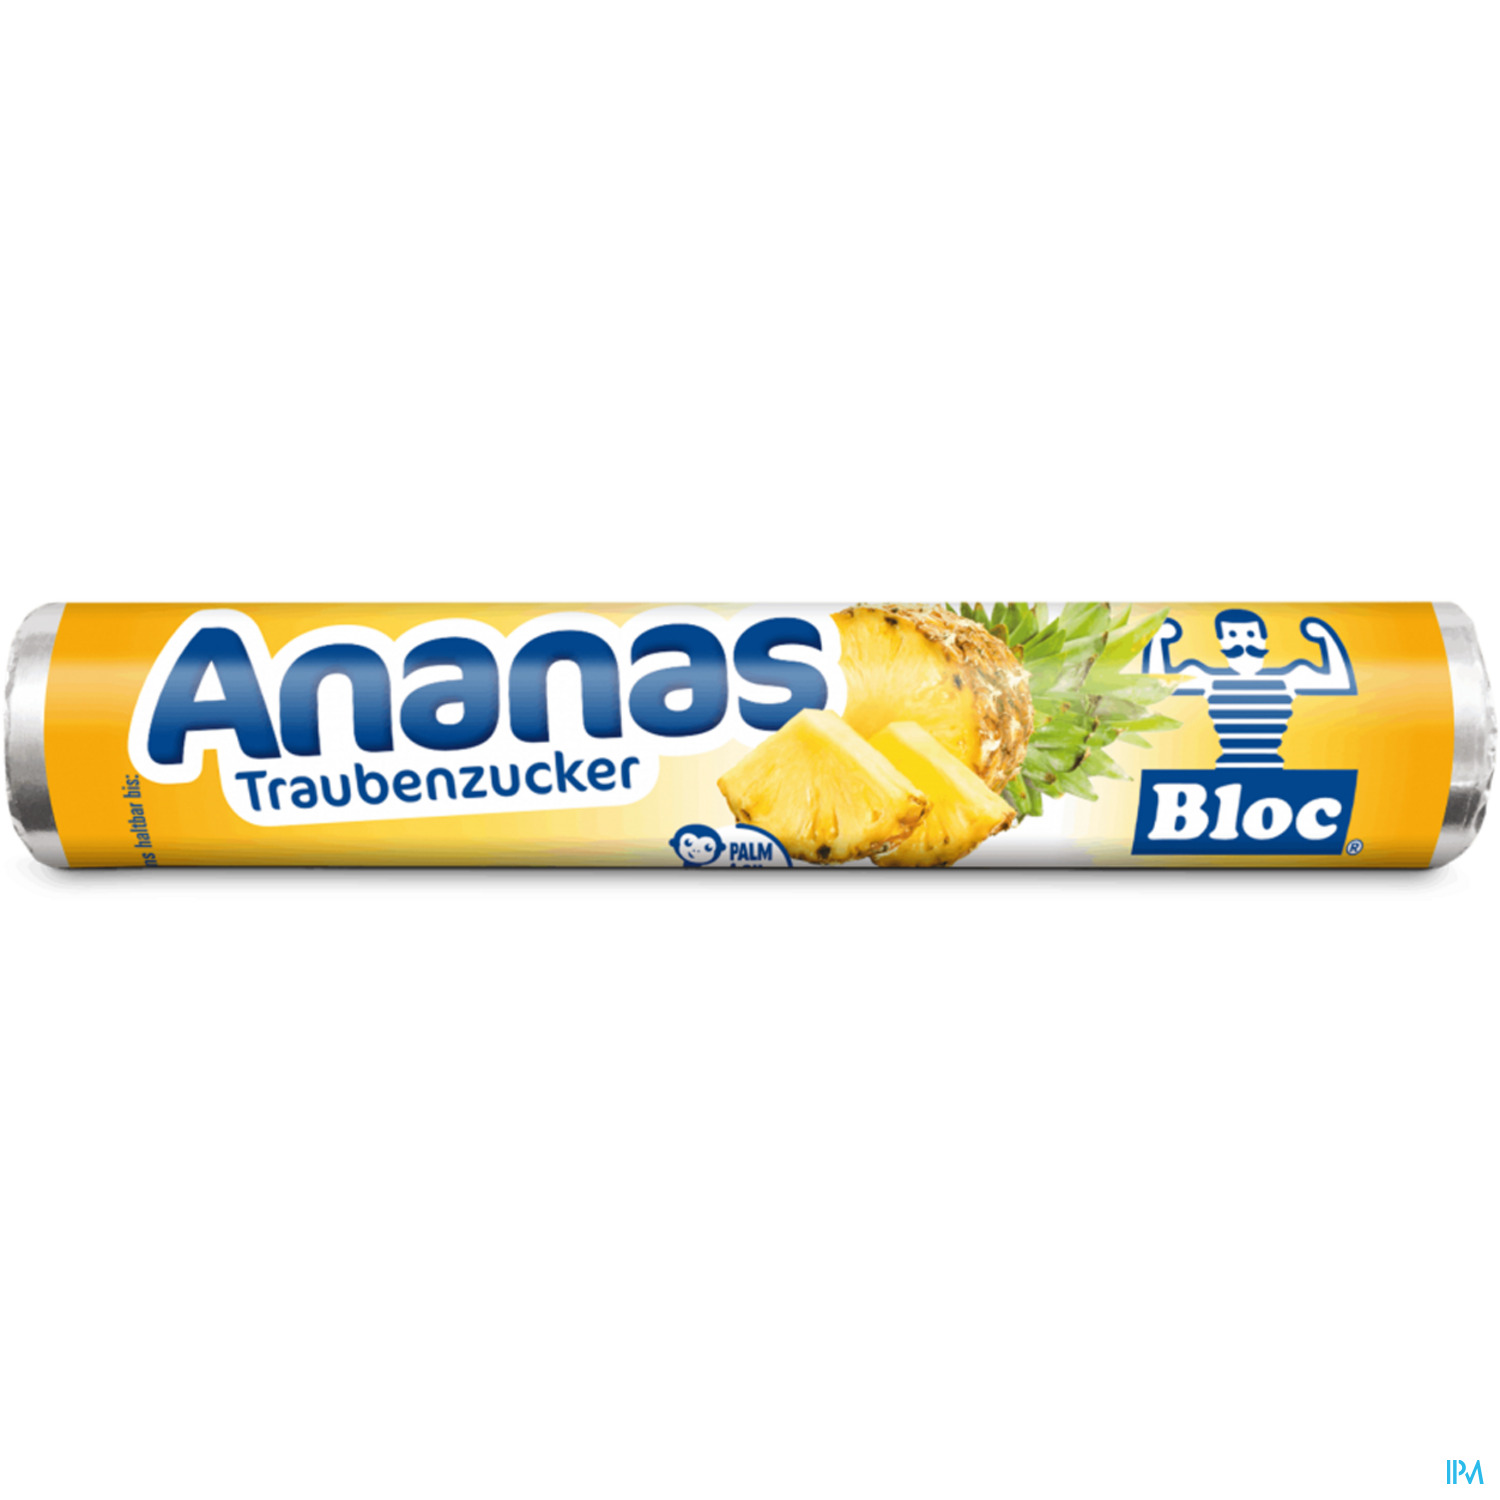 Bloc Traubenzucker Rollen Ananas 42g